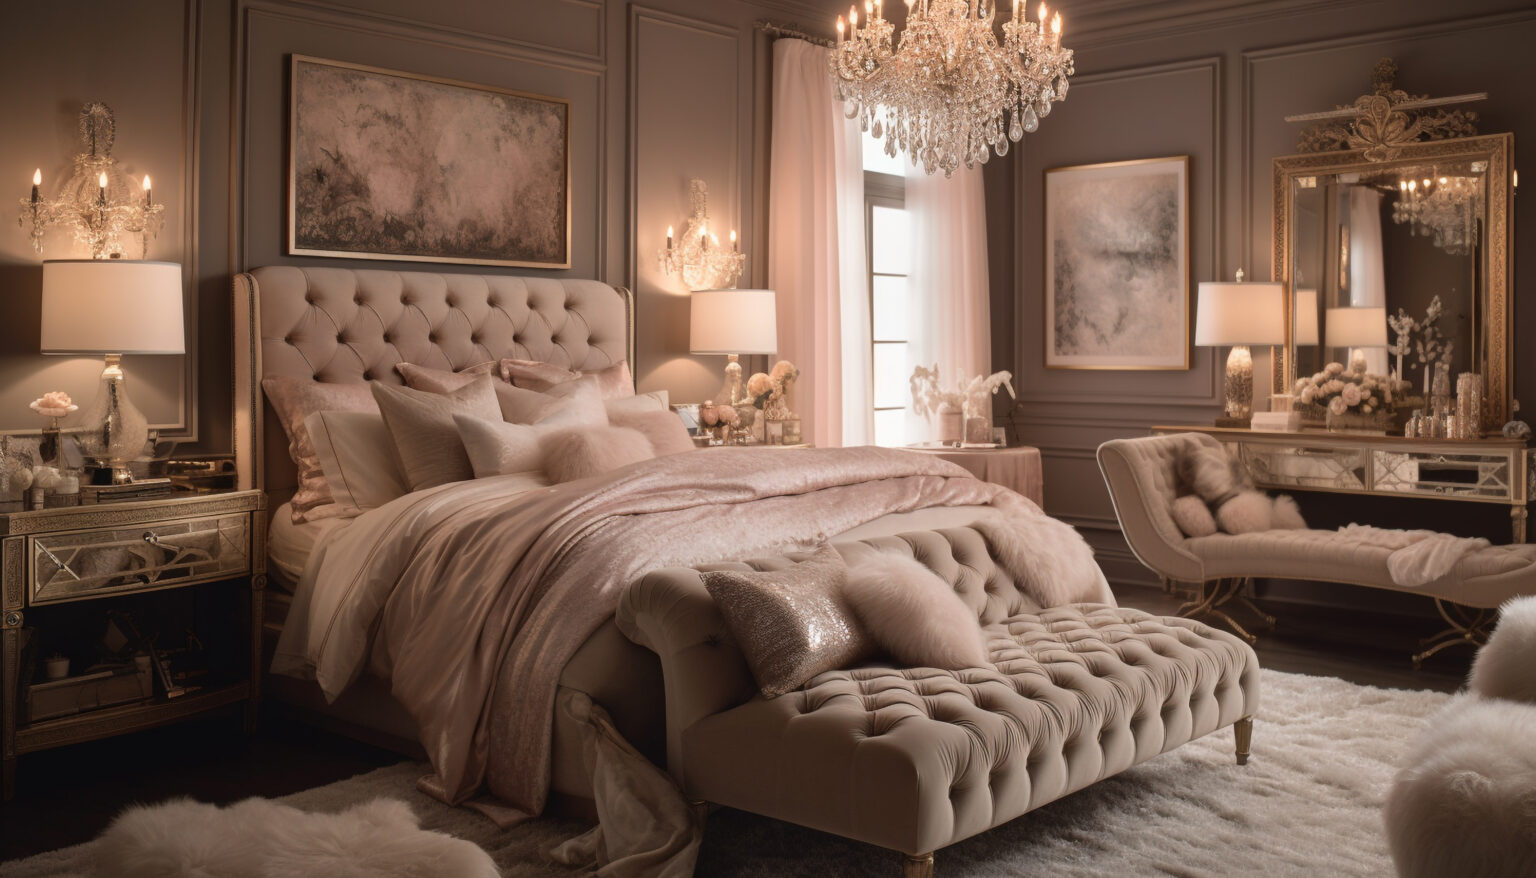 Französisches Doppelbett: Stilvolle Eleganz für Ihr Schlafzimmer